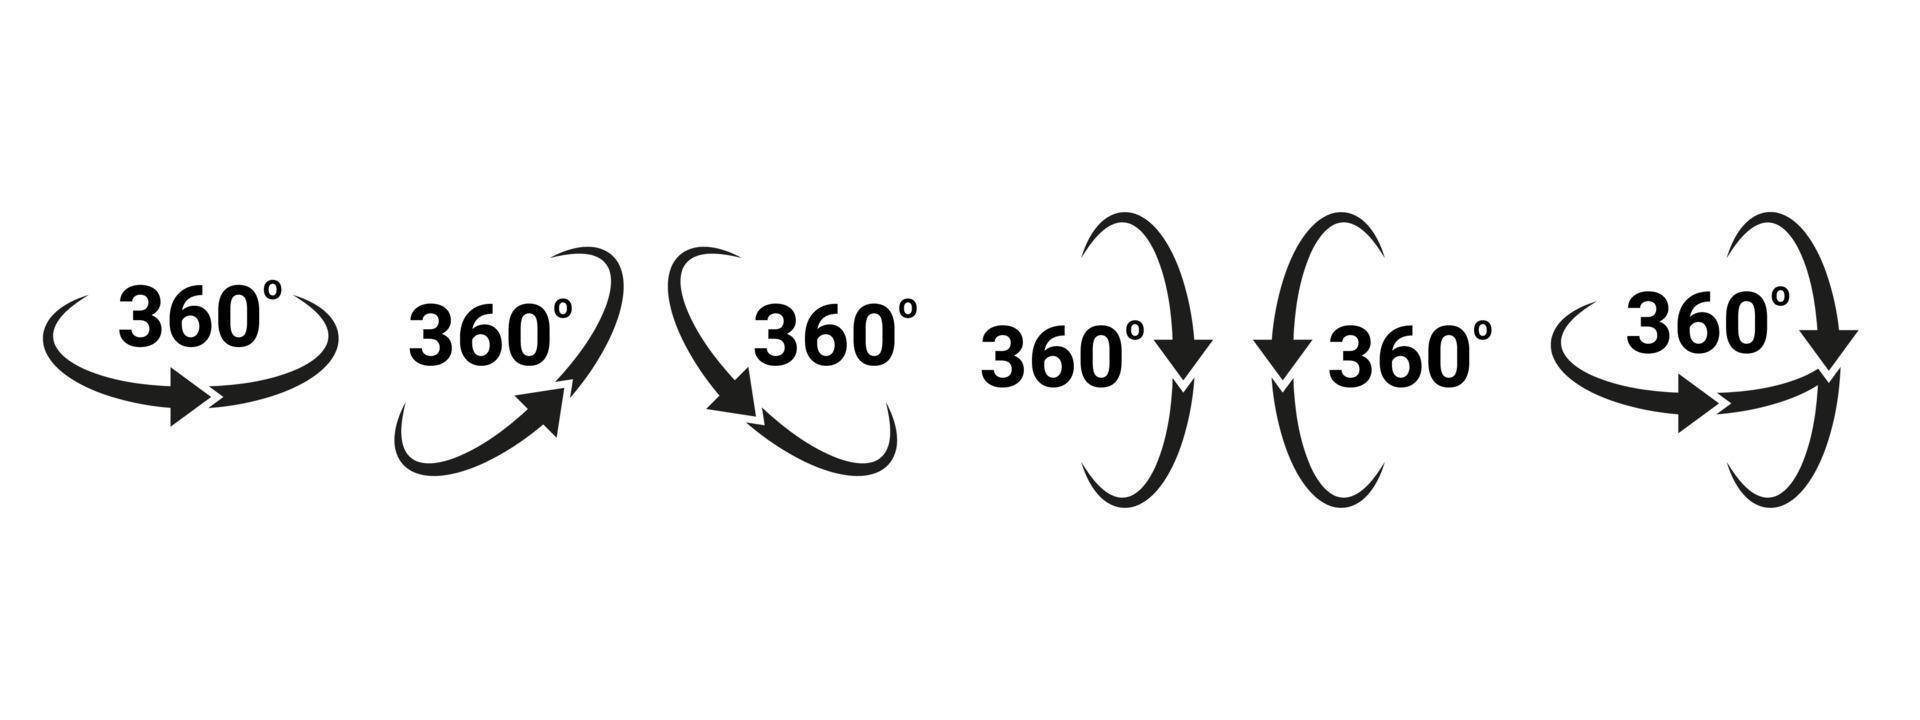 360-Grad-Pfeil, um Set-Symbol drehen. Kreiszeichen vertikale, horizontale und diagonale Ansicht mit Pfeildrehung um 360 Grad. virtuelle Realität. Drehzyklus, kreisförmiges Bewegungssymbol. Vektor